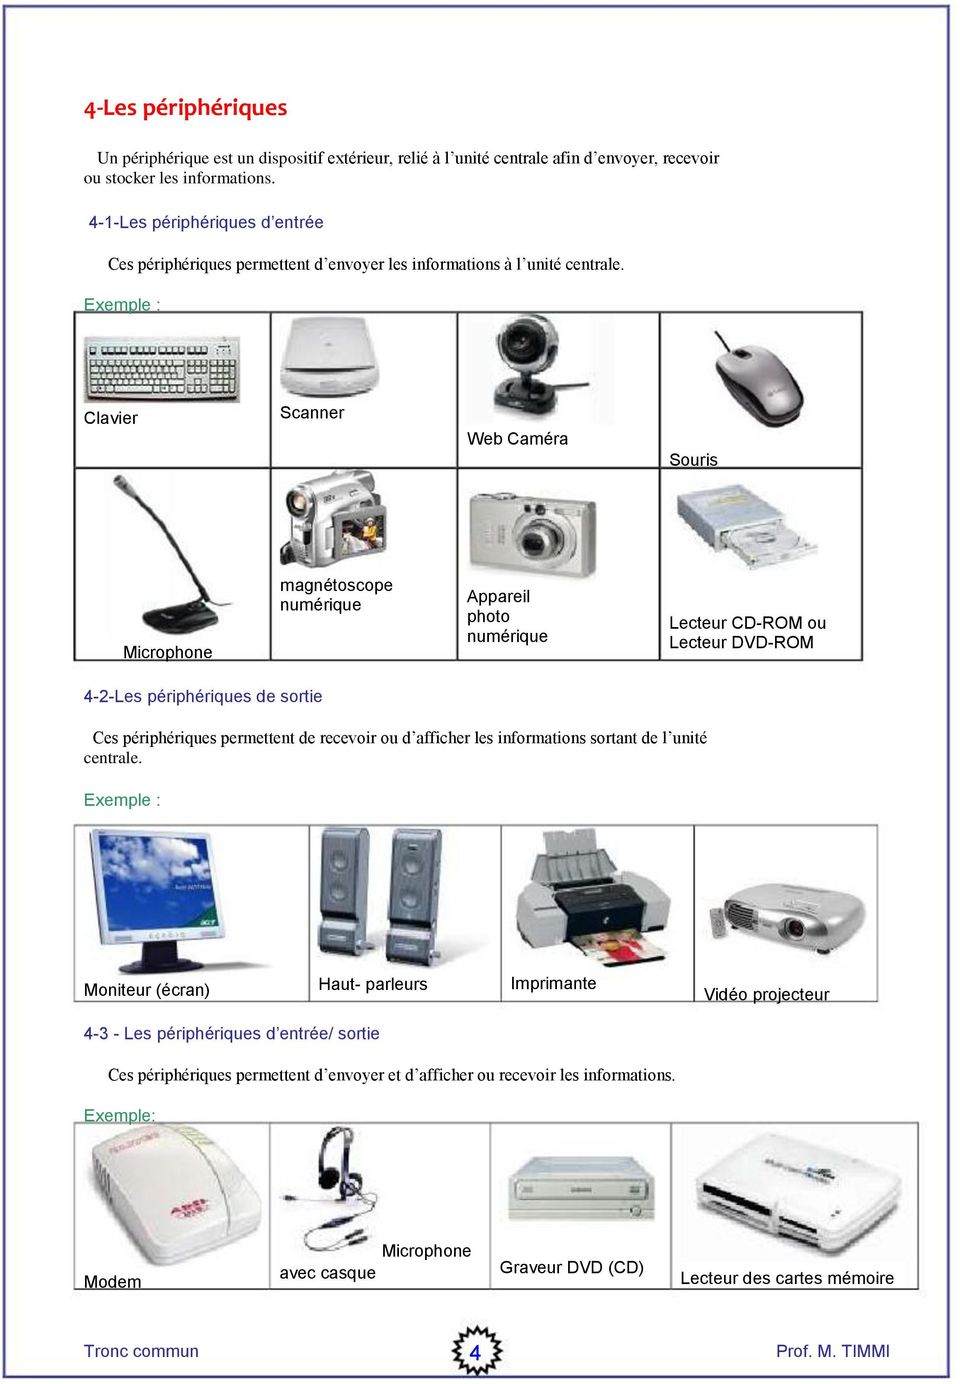 Clavier Scanner Web Caméra Souris Microphone magnétoscope numérique Appareil photo numérique Lecteur CD-ROM ou Lecteur DVD-ROM 4-2-Les périphériques de sortie Ces périphériques permettent de recevoir